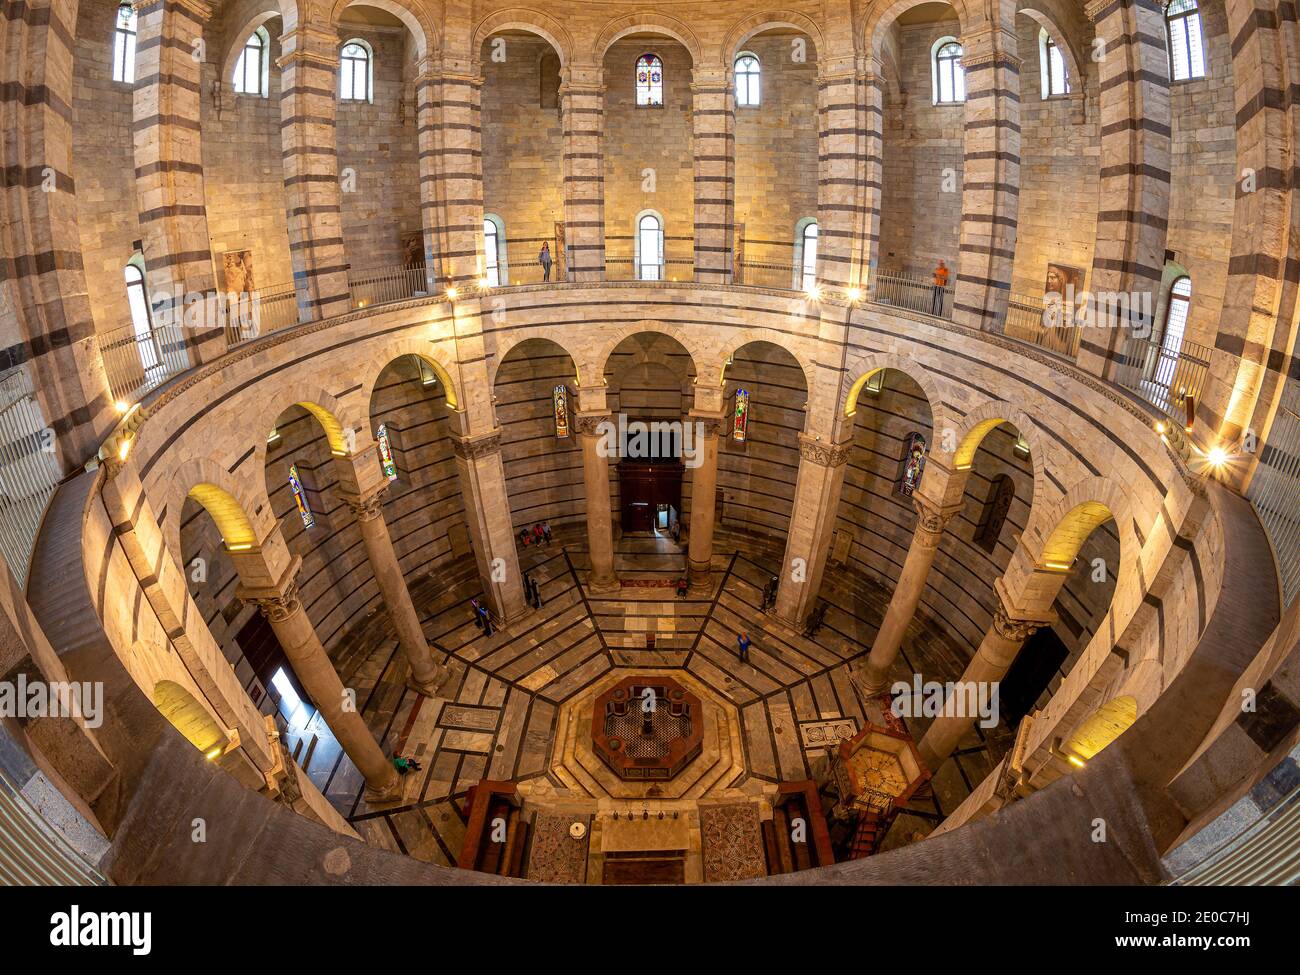 Europa, Italien, Toskana, Pisa. Das Baptisterium von San Giovanni in Pisa ist ein römisch-katholisches Kirchengebäude in Pisa, Italien. Sehr beliebtes touristisches Ziel Stockfoto